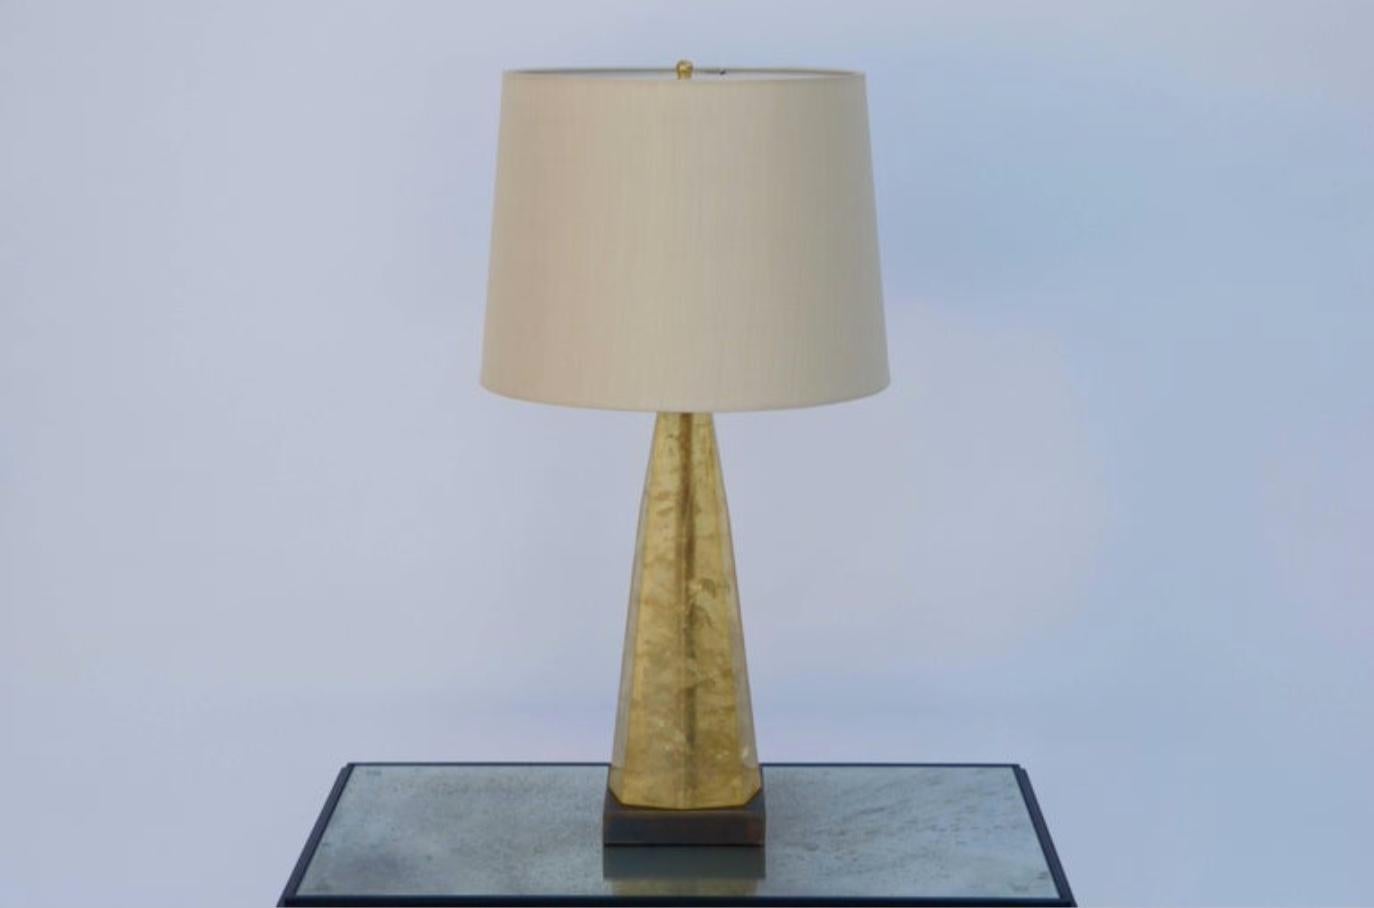 Lampe en résine fractale dans le style de Marie-Claude de Fouquières, vers 1975. Colonne en résine fractale en forme d'obélisque sur une base en laiton patiné. Rééquipé d'un abat-jour en soie crème personnalisé et d'un diffuseur supérieur assorti.